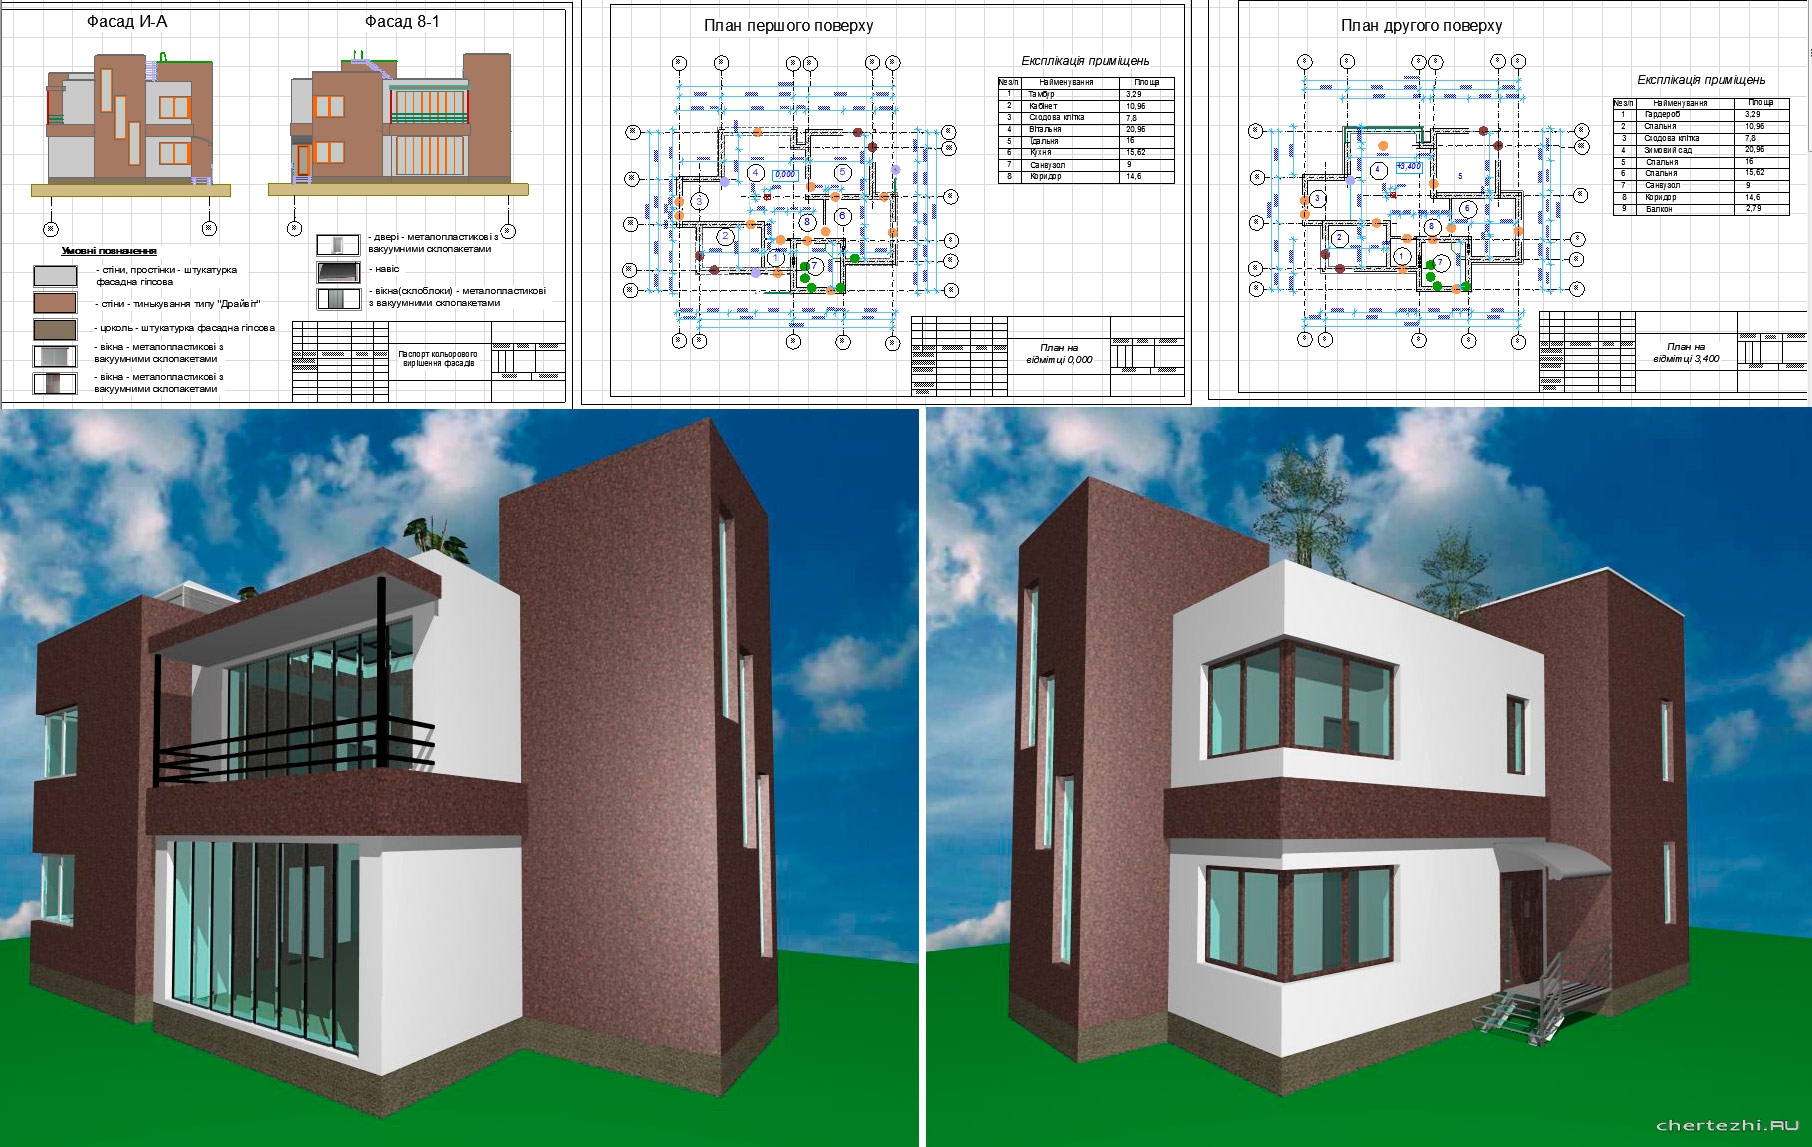 Курсовий проект - Архітектурно - конструктивне проектування двоповерхової одноквартирного житлового будинку 14,52 х 10,76 м у м. Луцьк